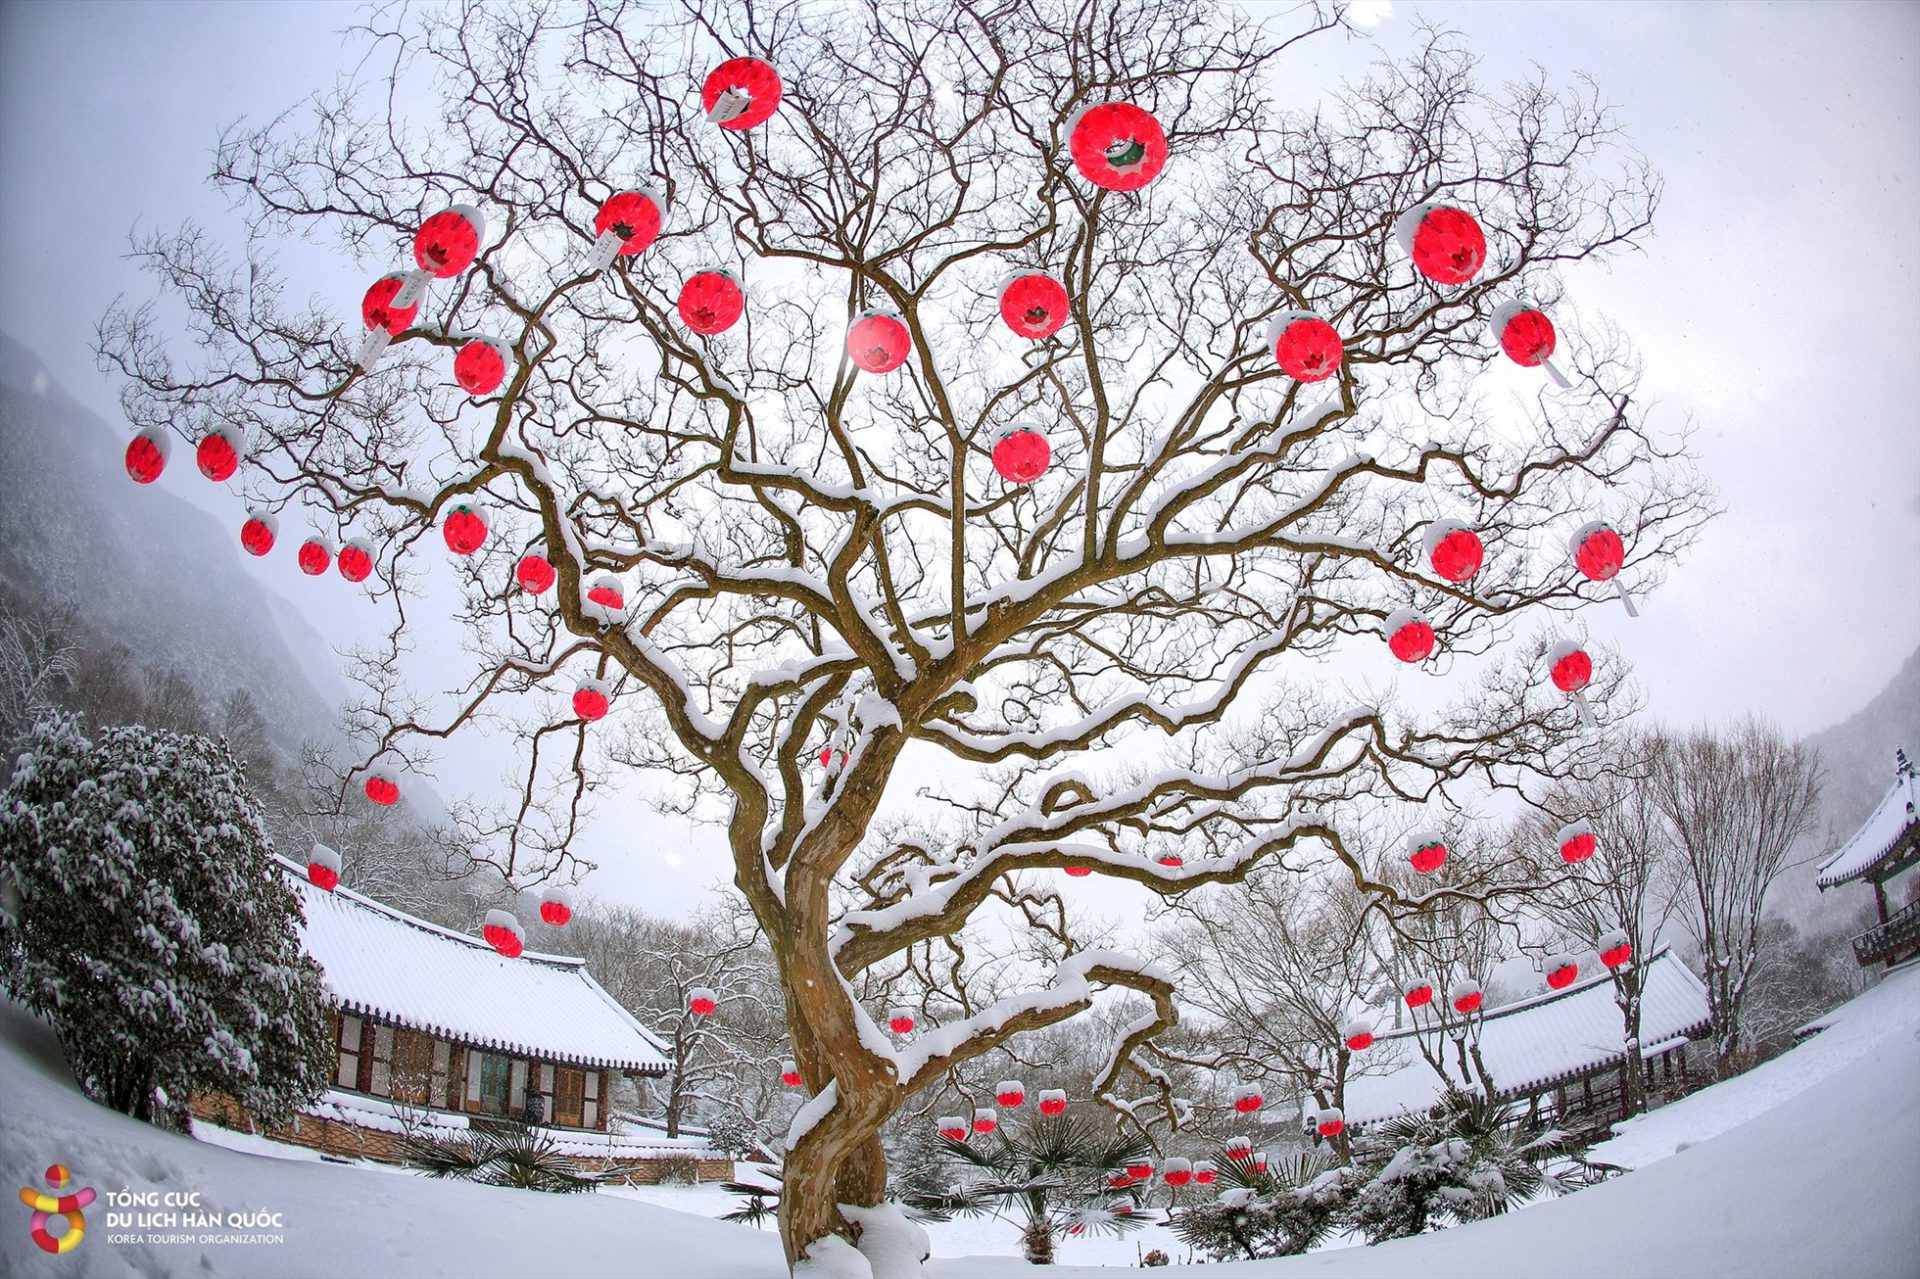 Một số hình ảnh khác về mùa tuyết rơi ở Hàn Quốc.